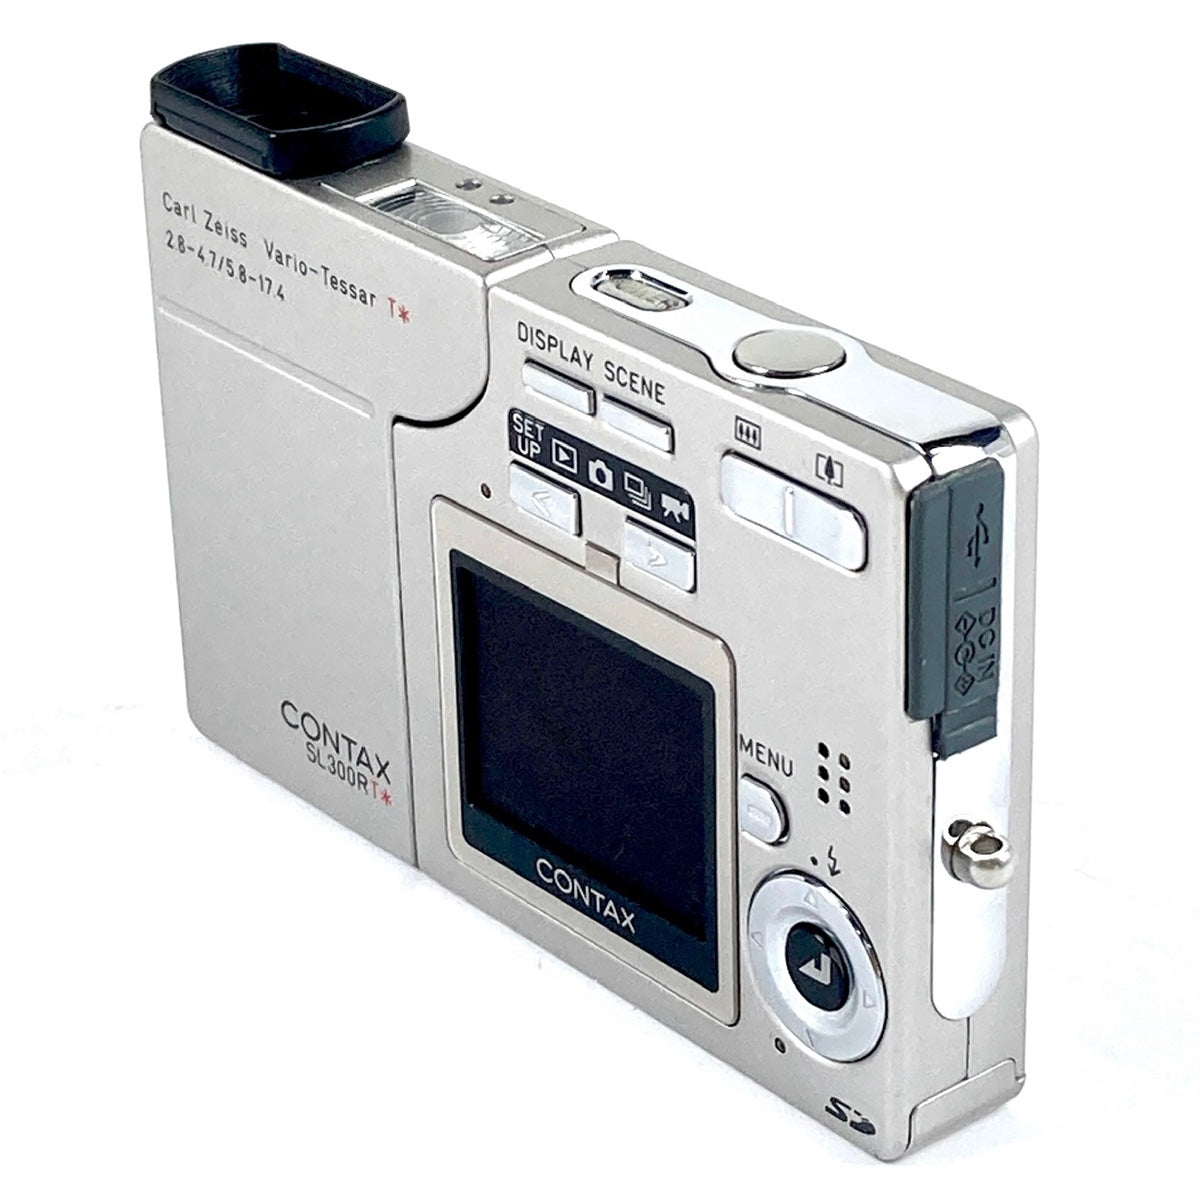 13,160円コンタックス SL300RT contax デジタルカメラ デジカメ